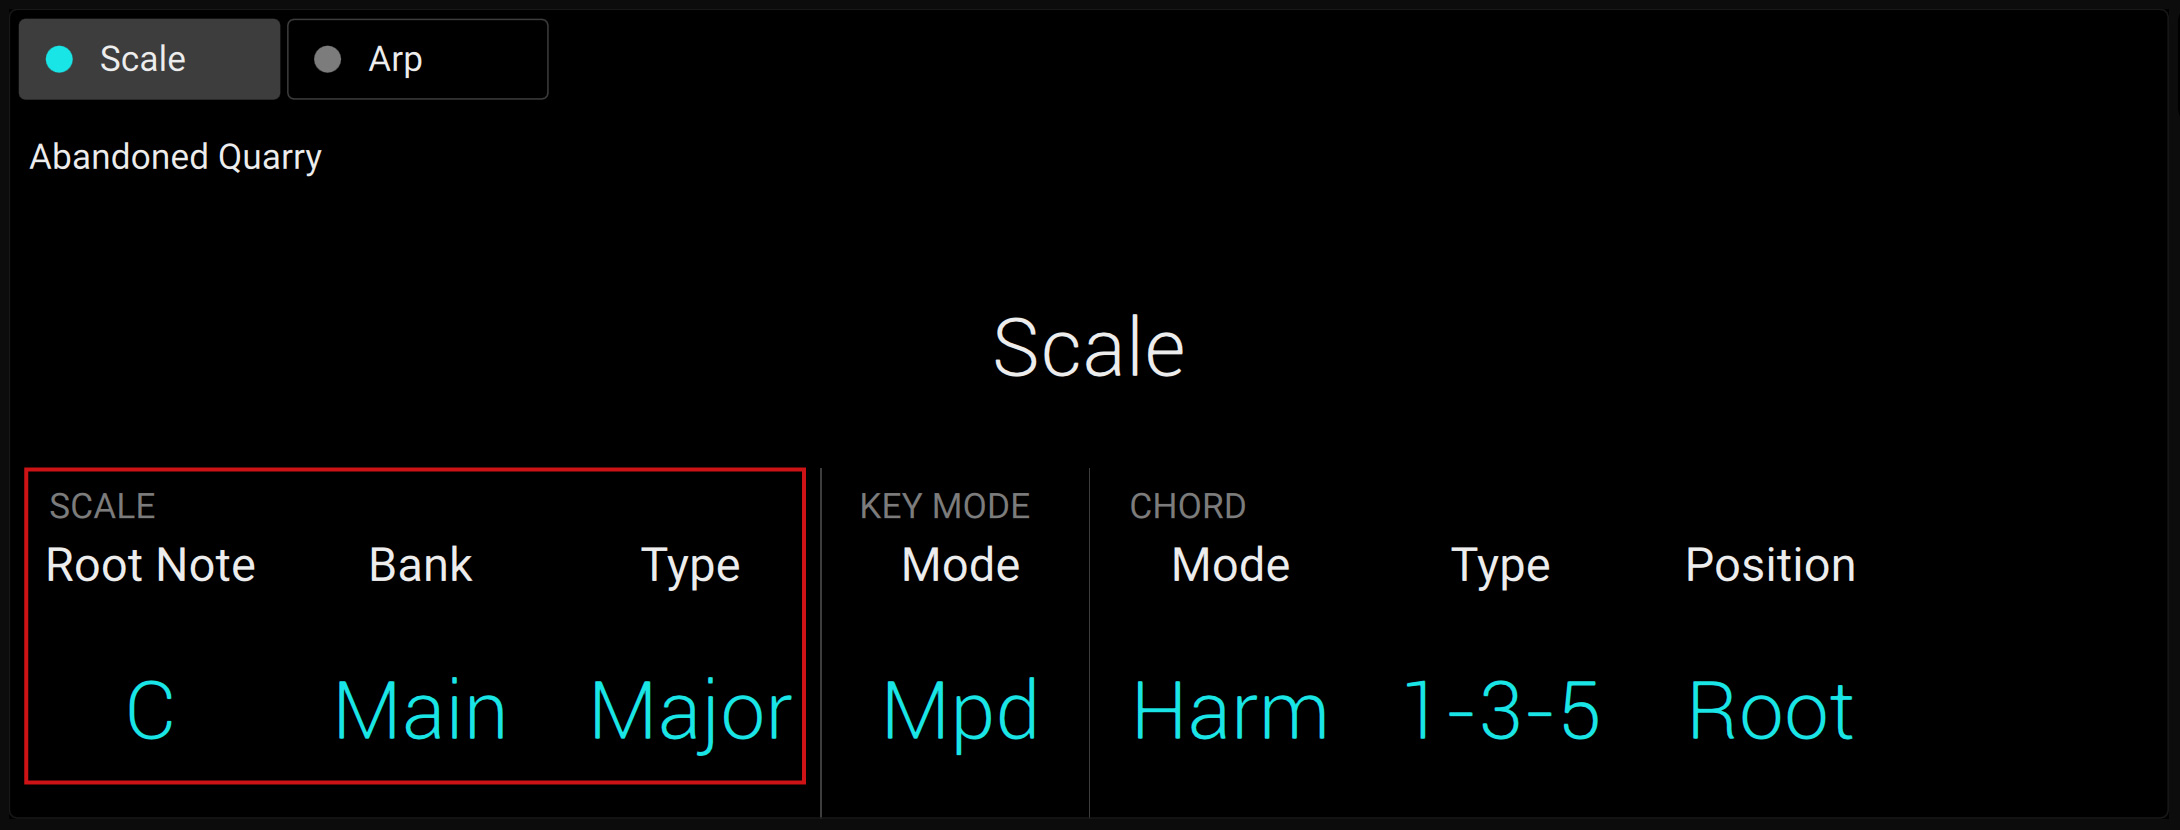 KS-MK3_D_PlayAssist-Scale-SCALEParameters.jpg